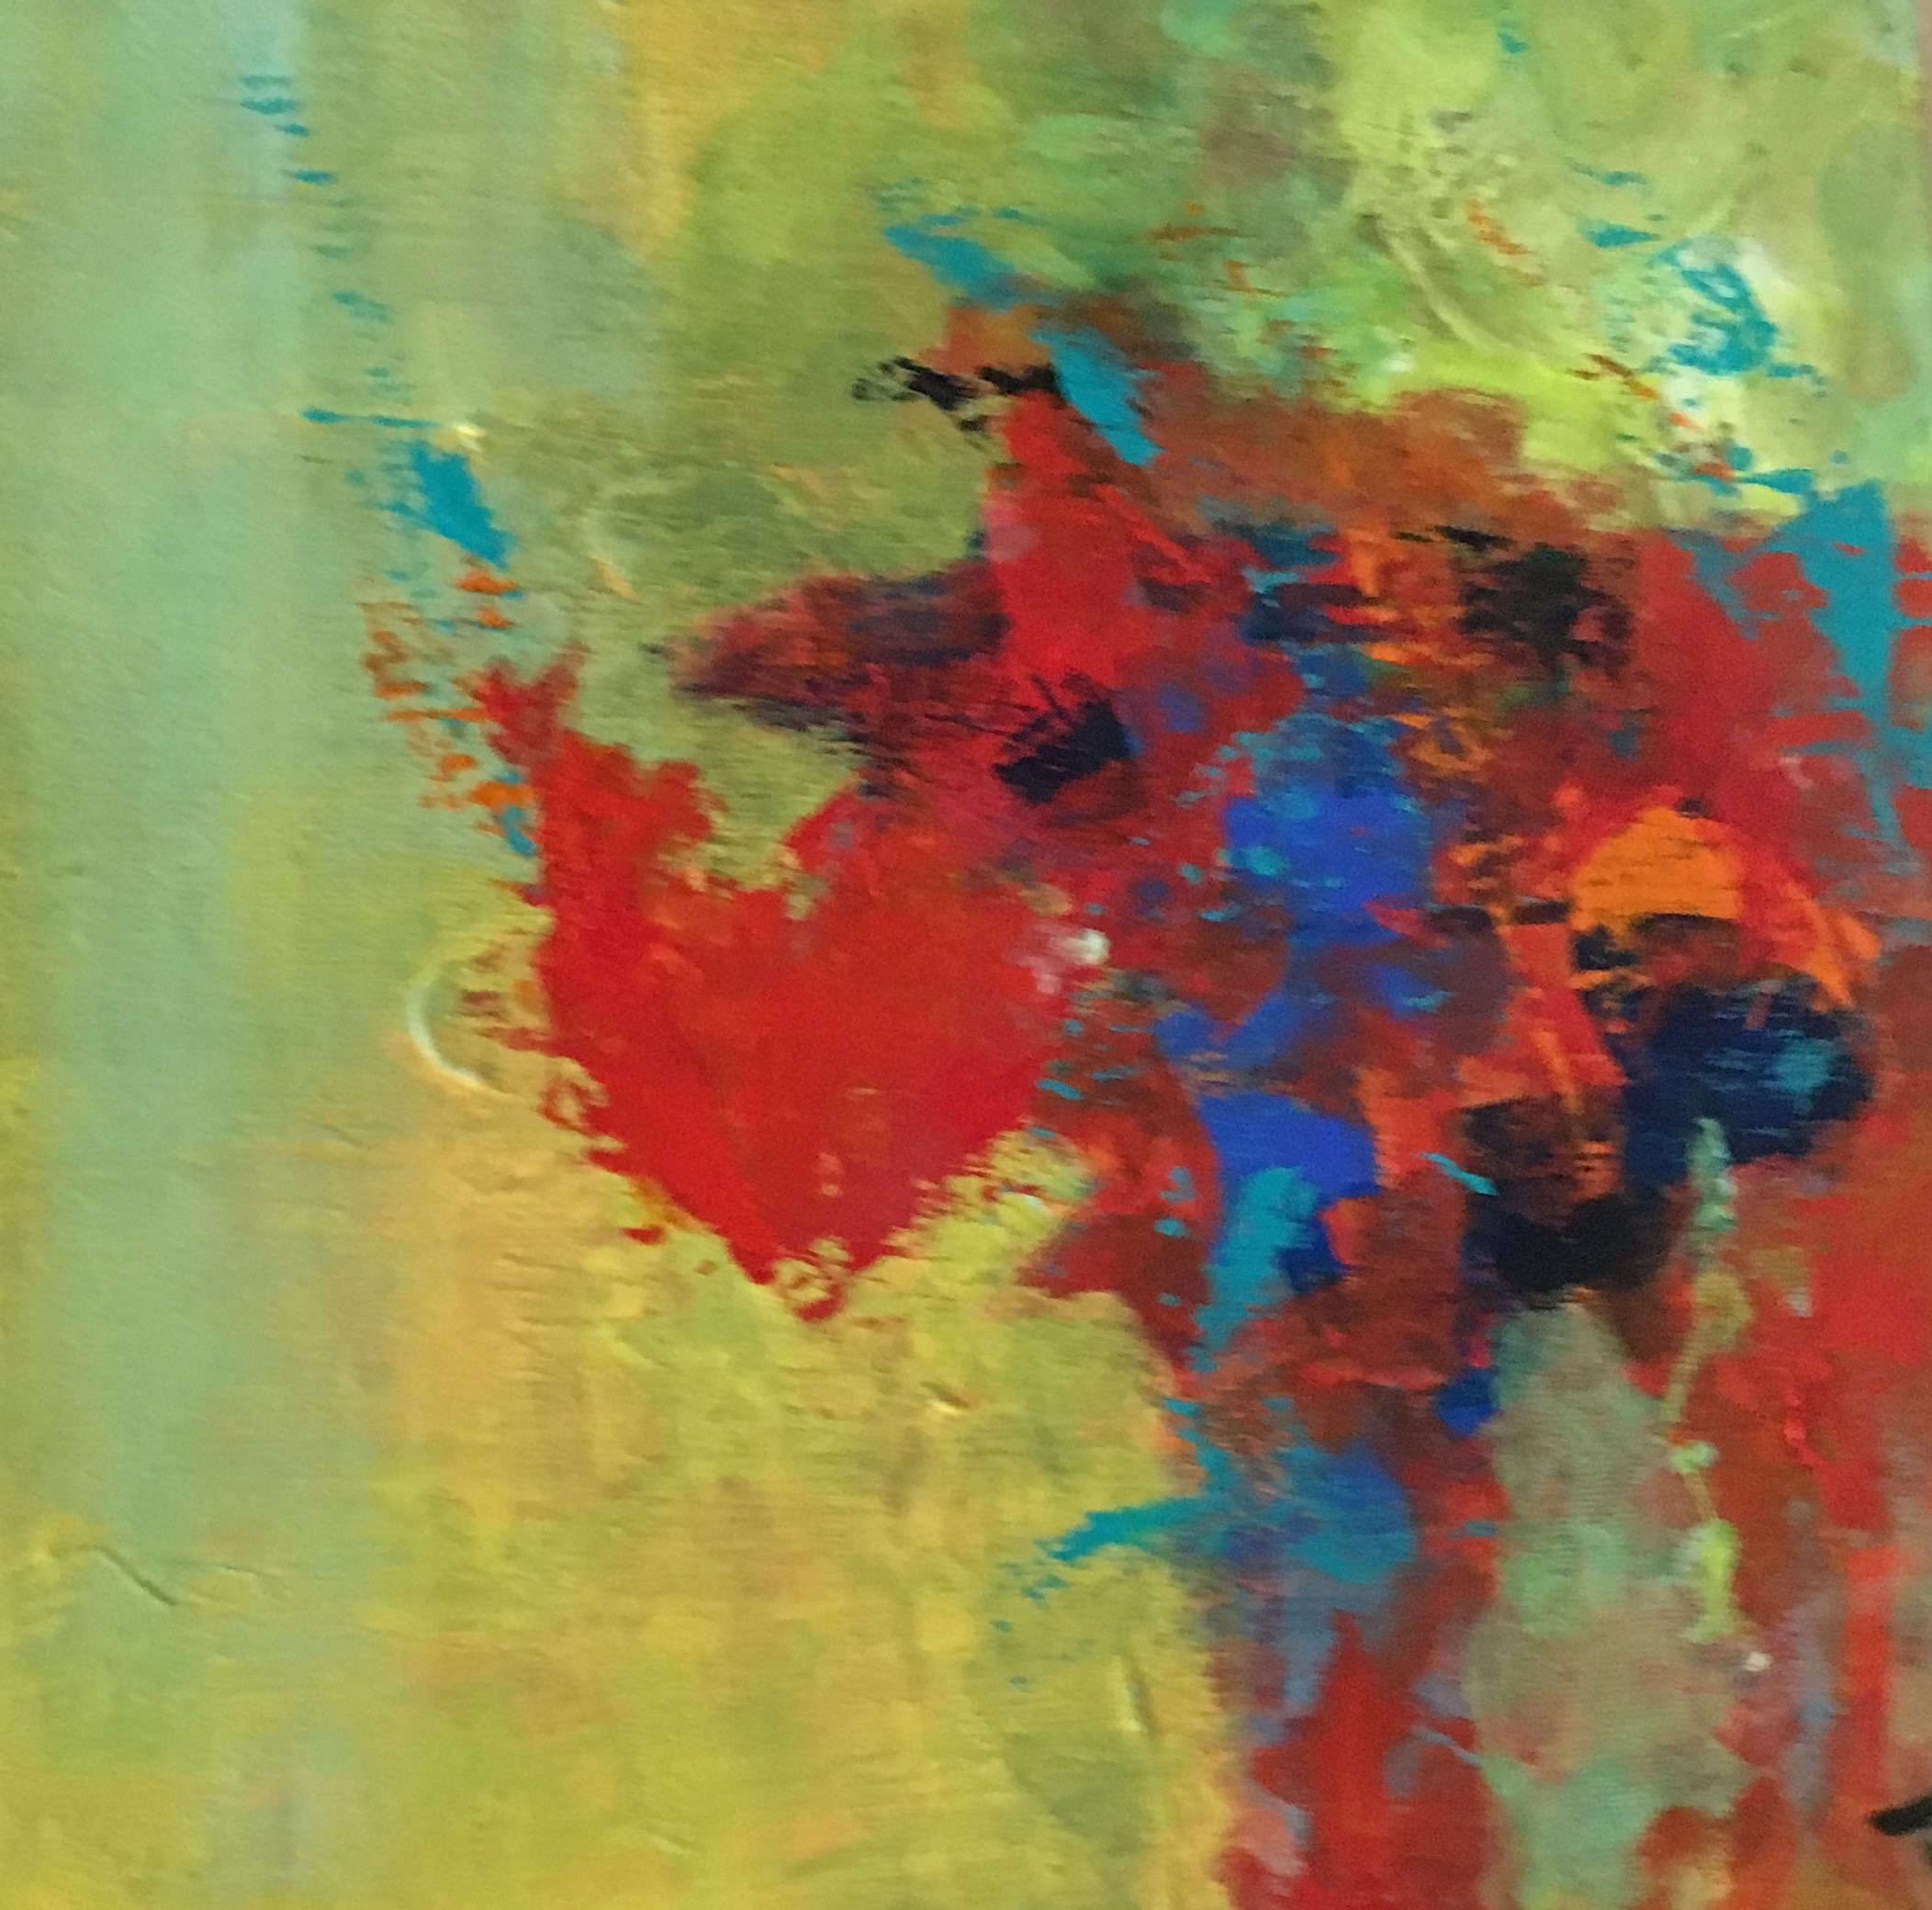 Et Næsehorn står og kigger ud i luften i dette lille farverige abstrakte maleri.